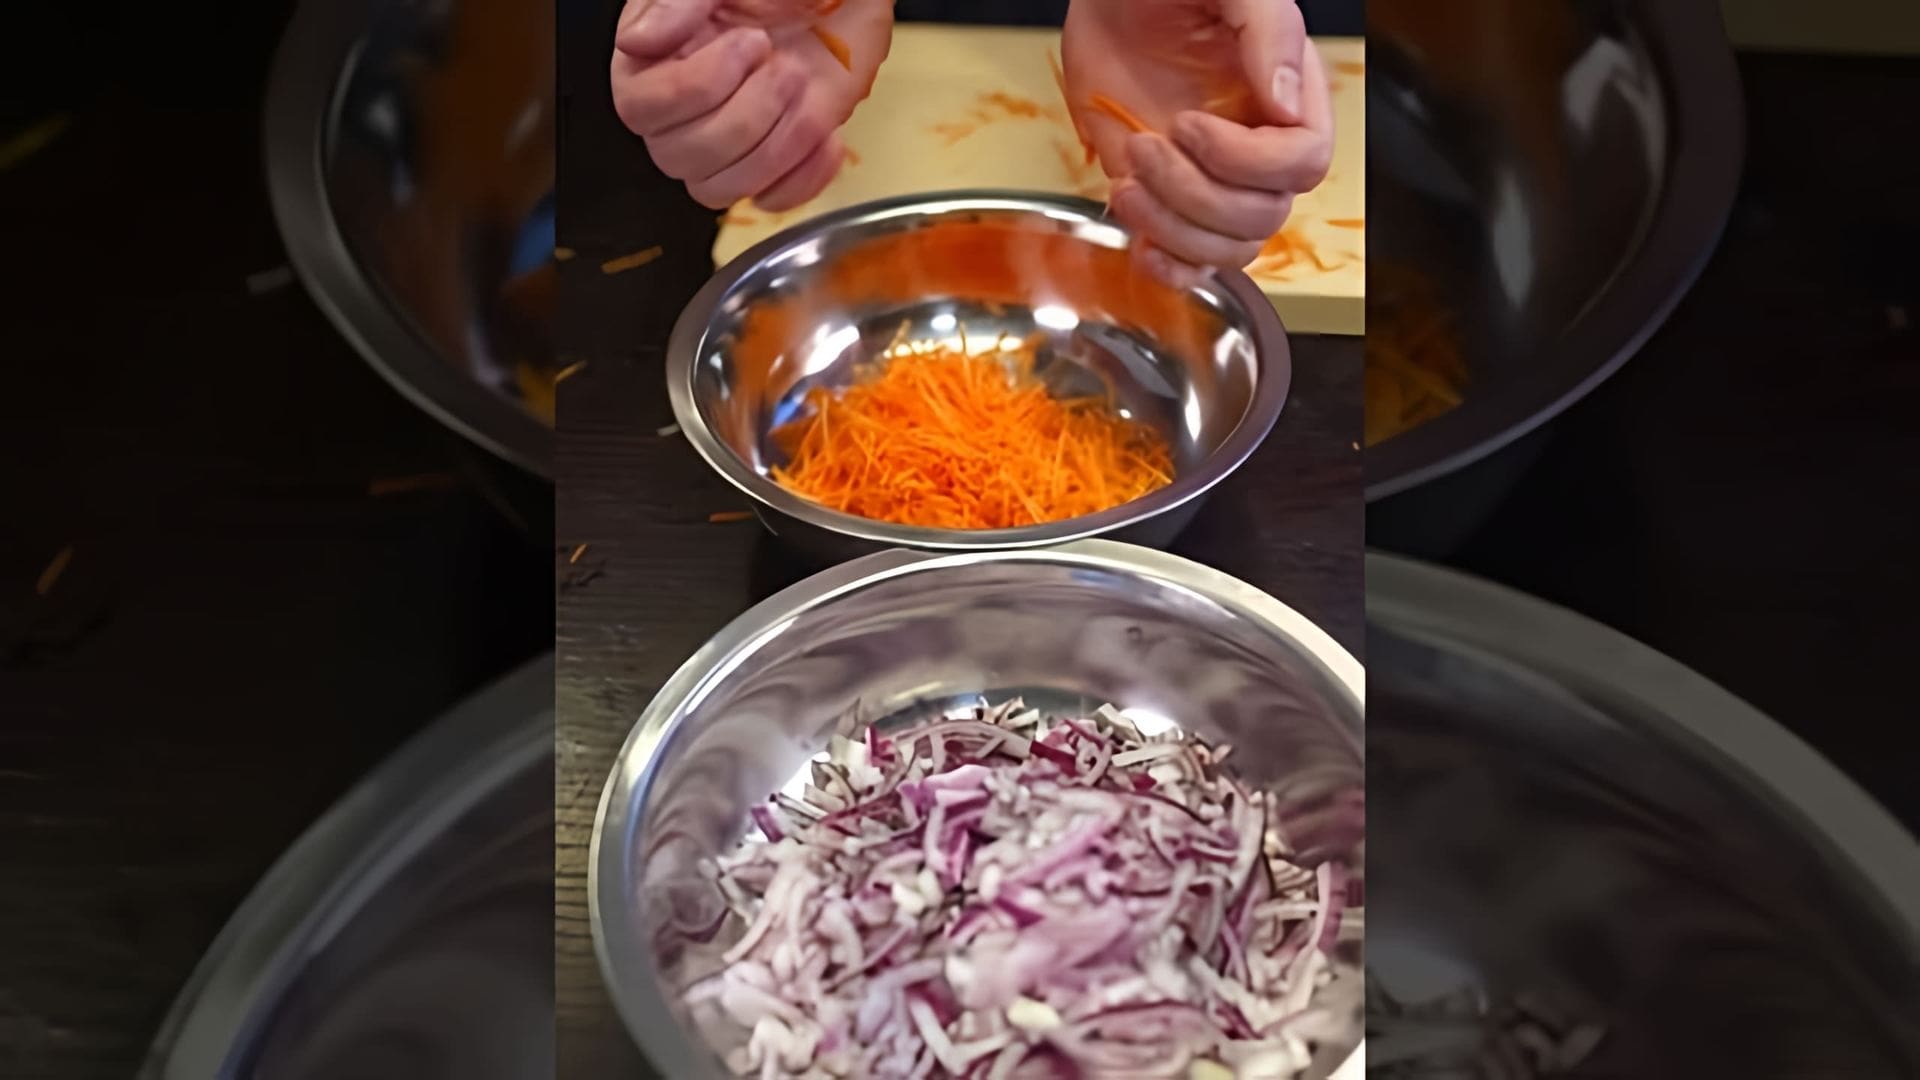 В этом видео демонстрируется рецепт приготовления одной из лучших недорогих закусок